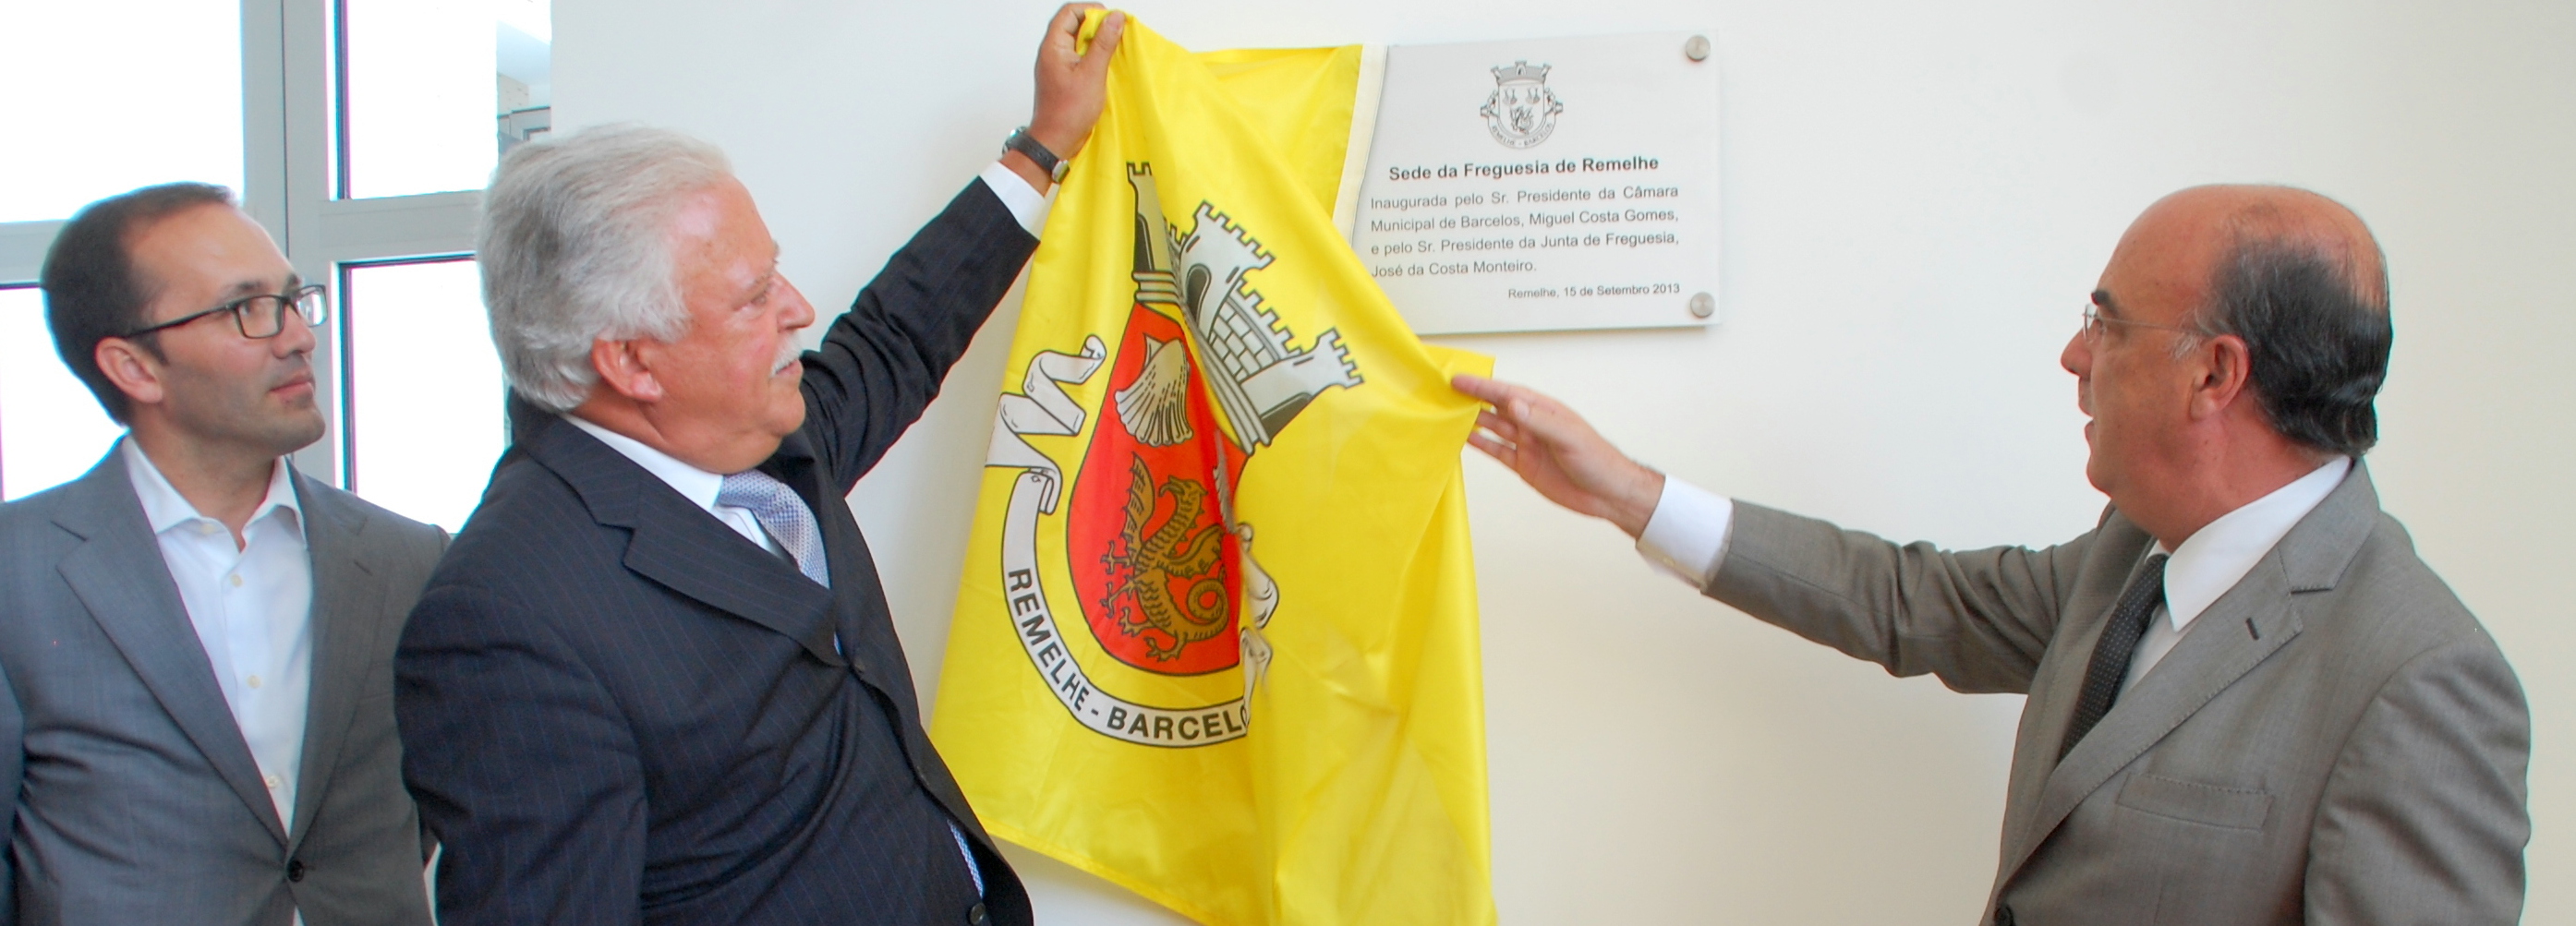 Presidente da Câmara inaugurou nova sede da Freguesia de Remelhe